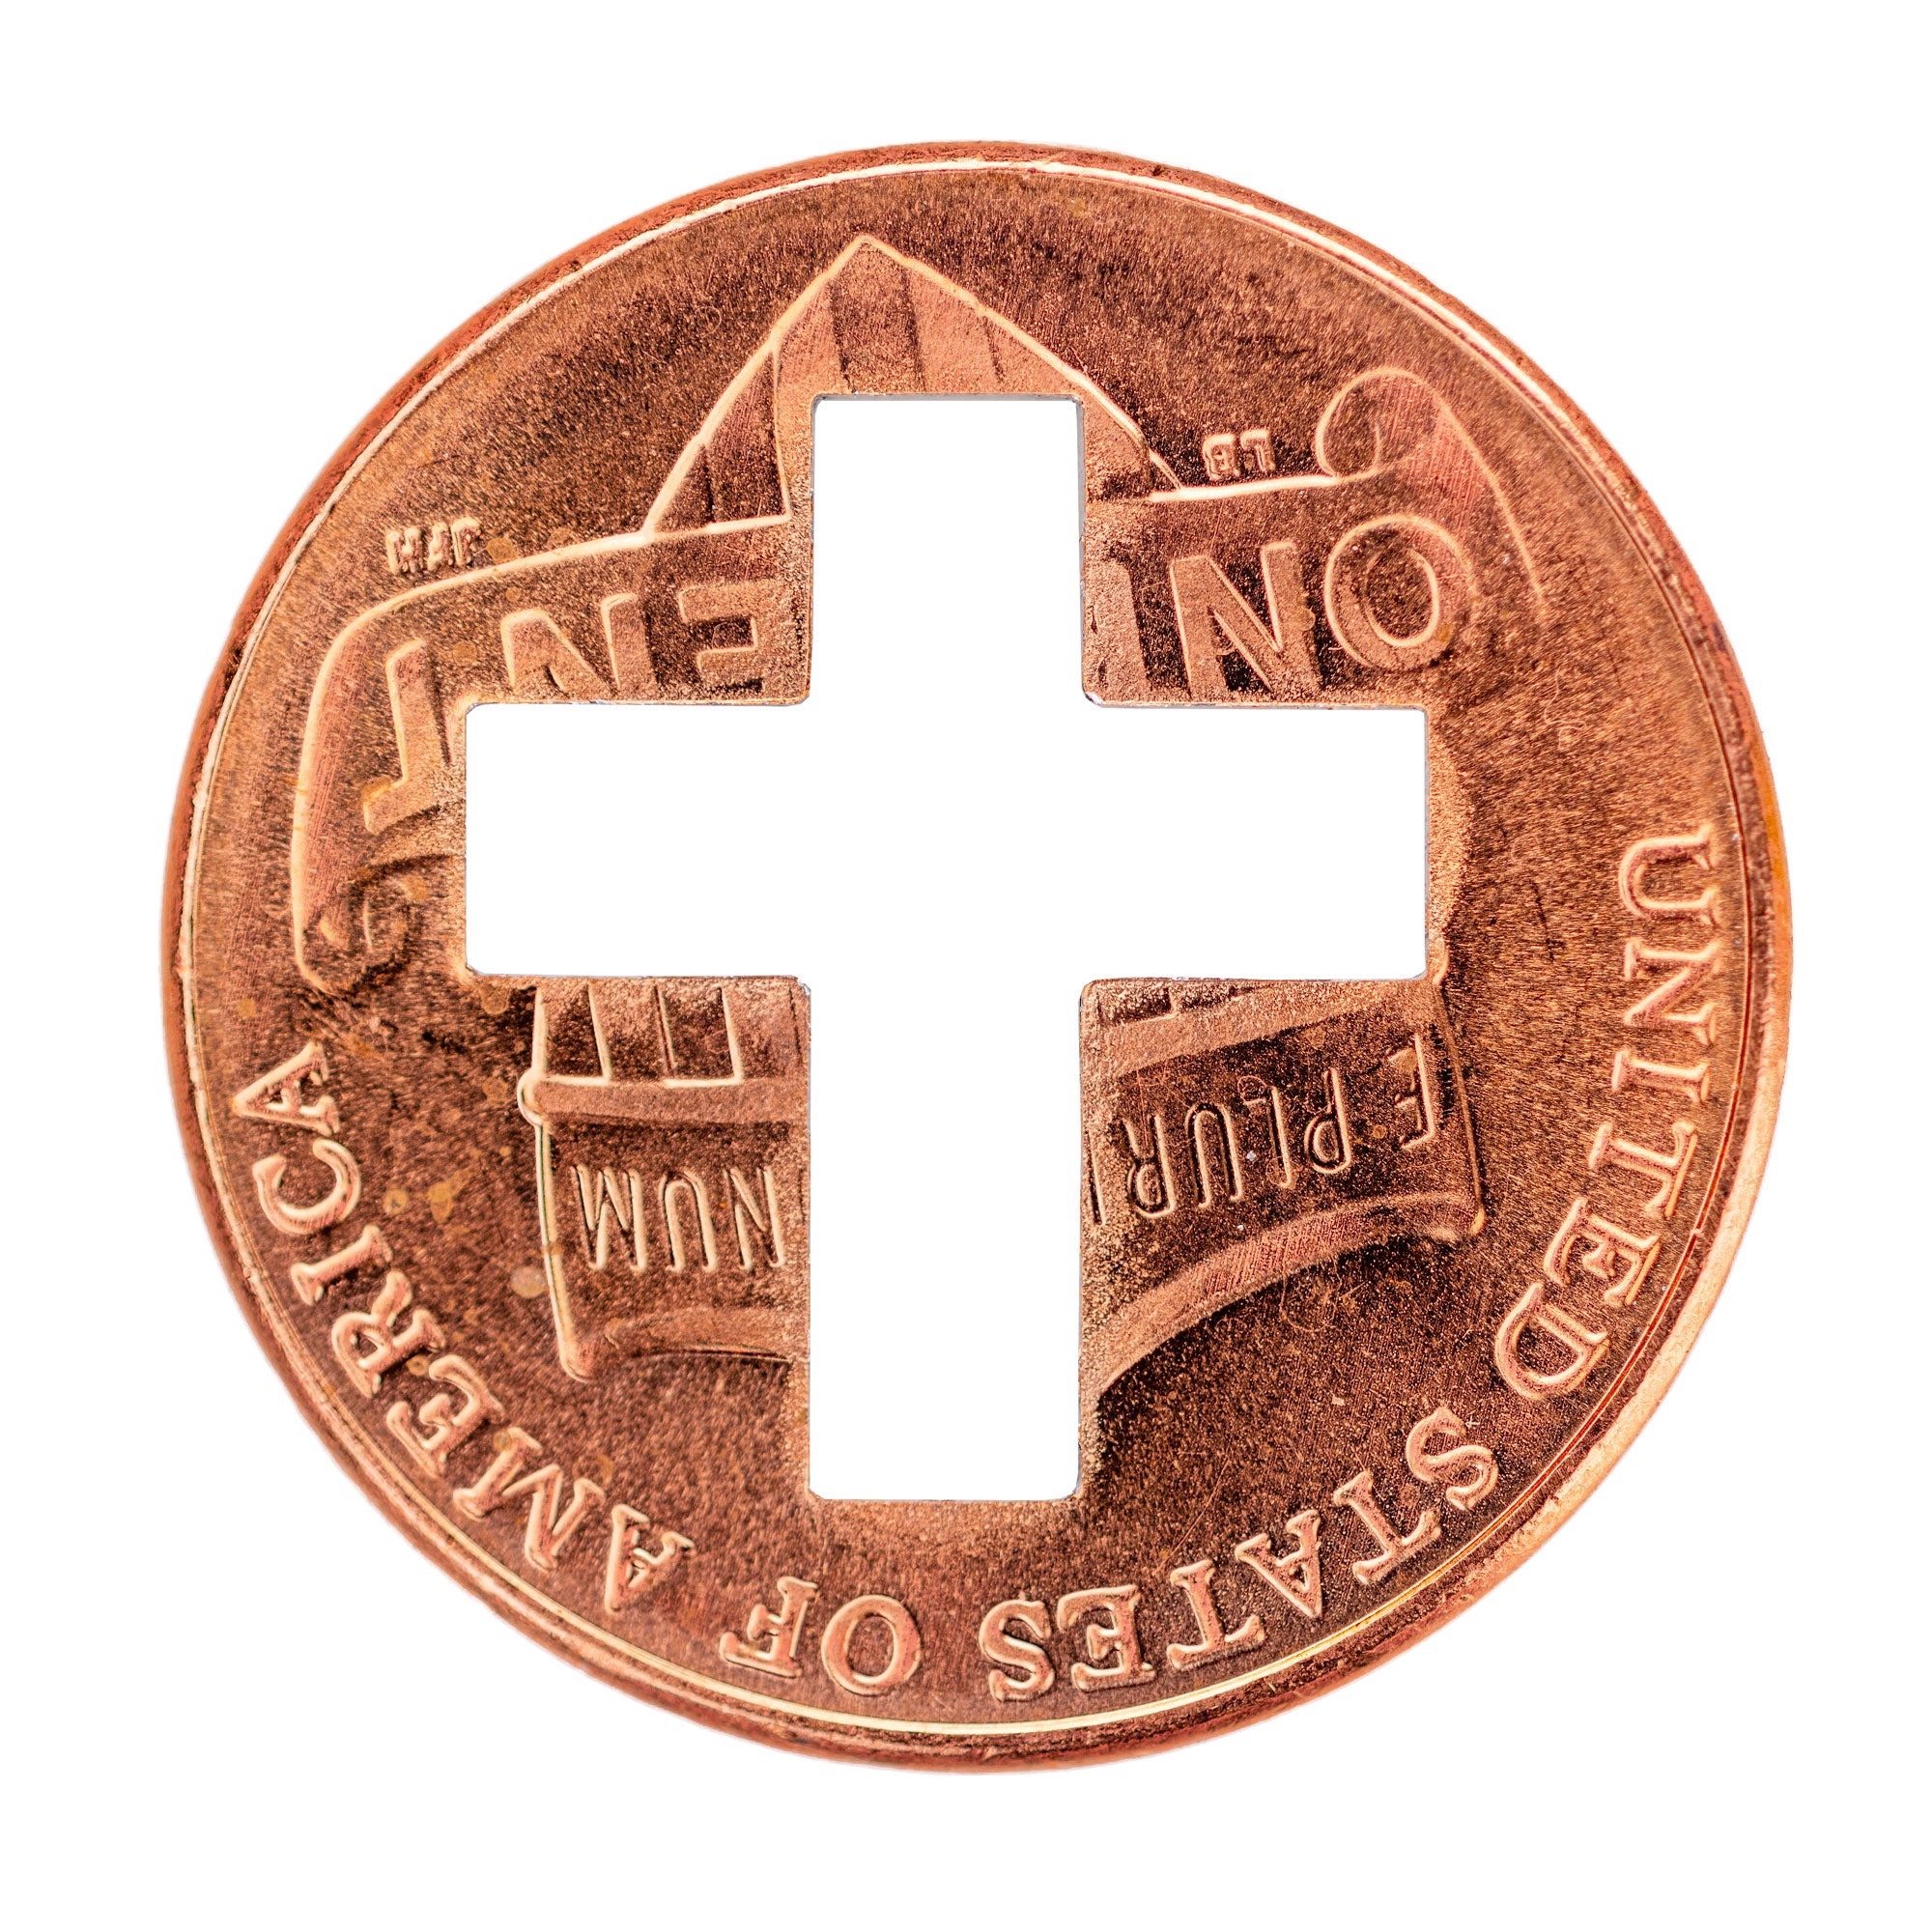 2024 Cross Pennies from Heaven Cross Penny